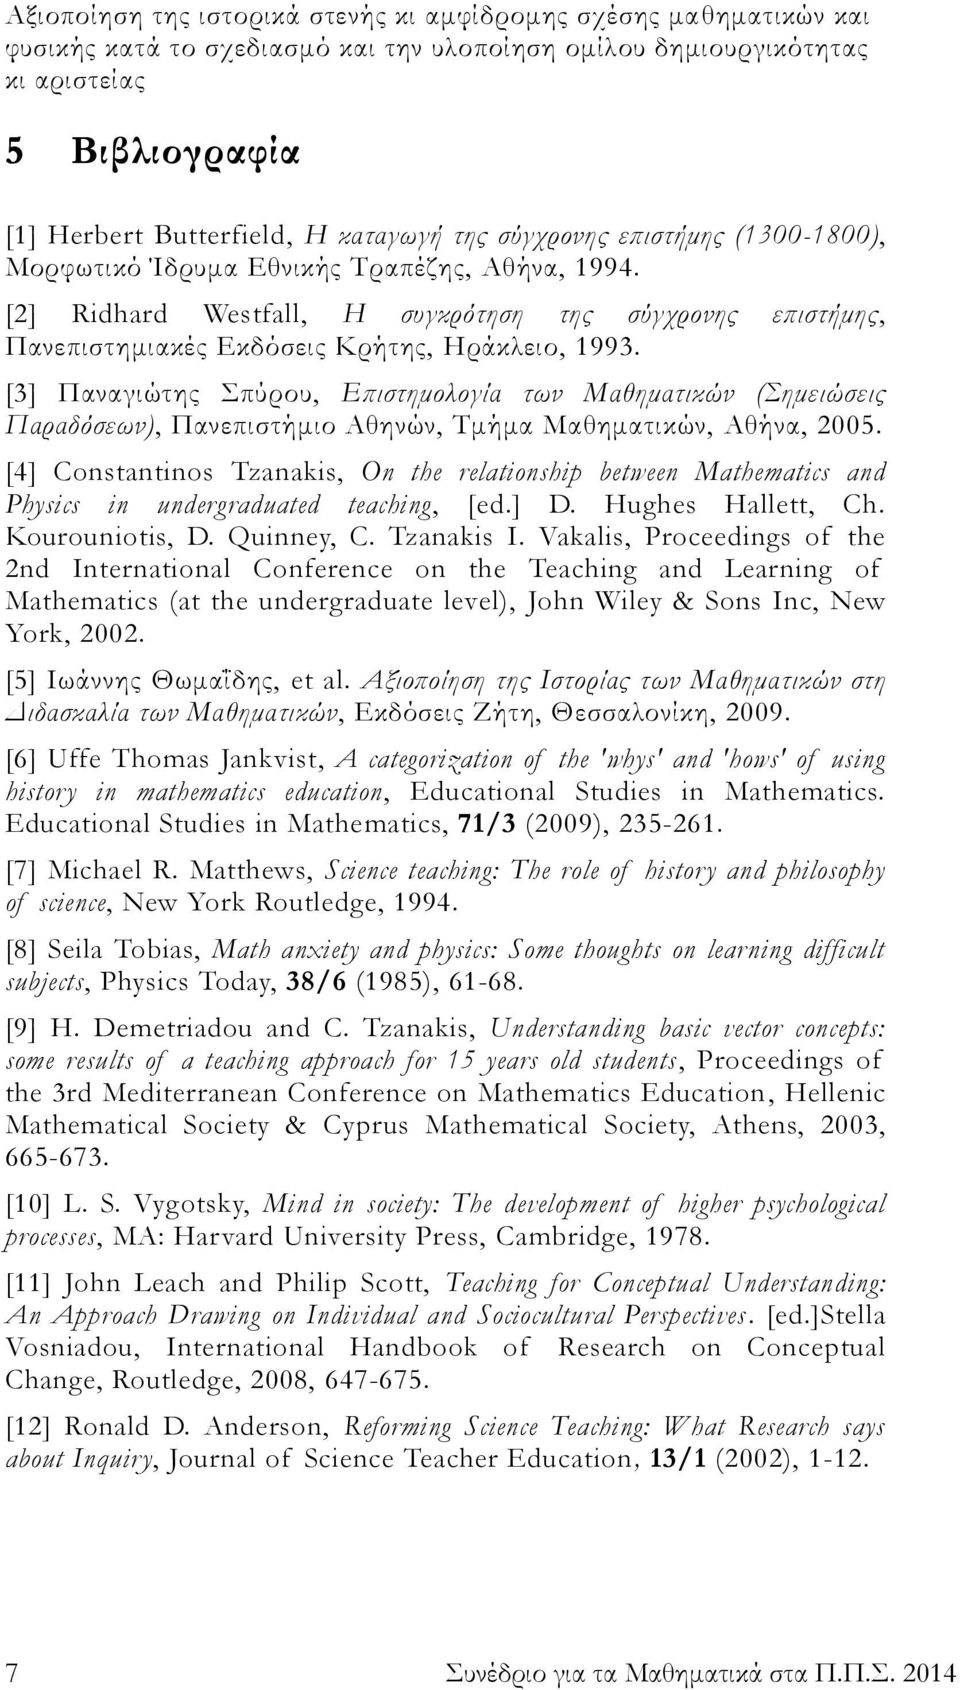 [3] Παναγιώτης Σπύρου, Επιστημολογία των Μαθηματικών (Σημειώσεις Παραδόσεων), Πανεπιστήμιο Αθηνών, Τμήμα Μαθηματικών, Αθήνα, 2005.